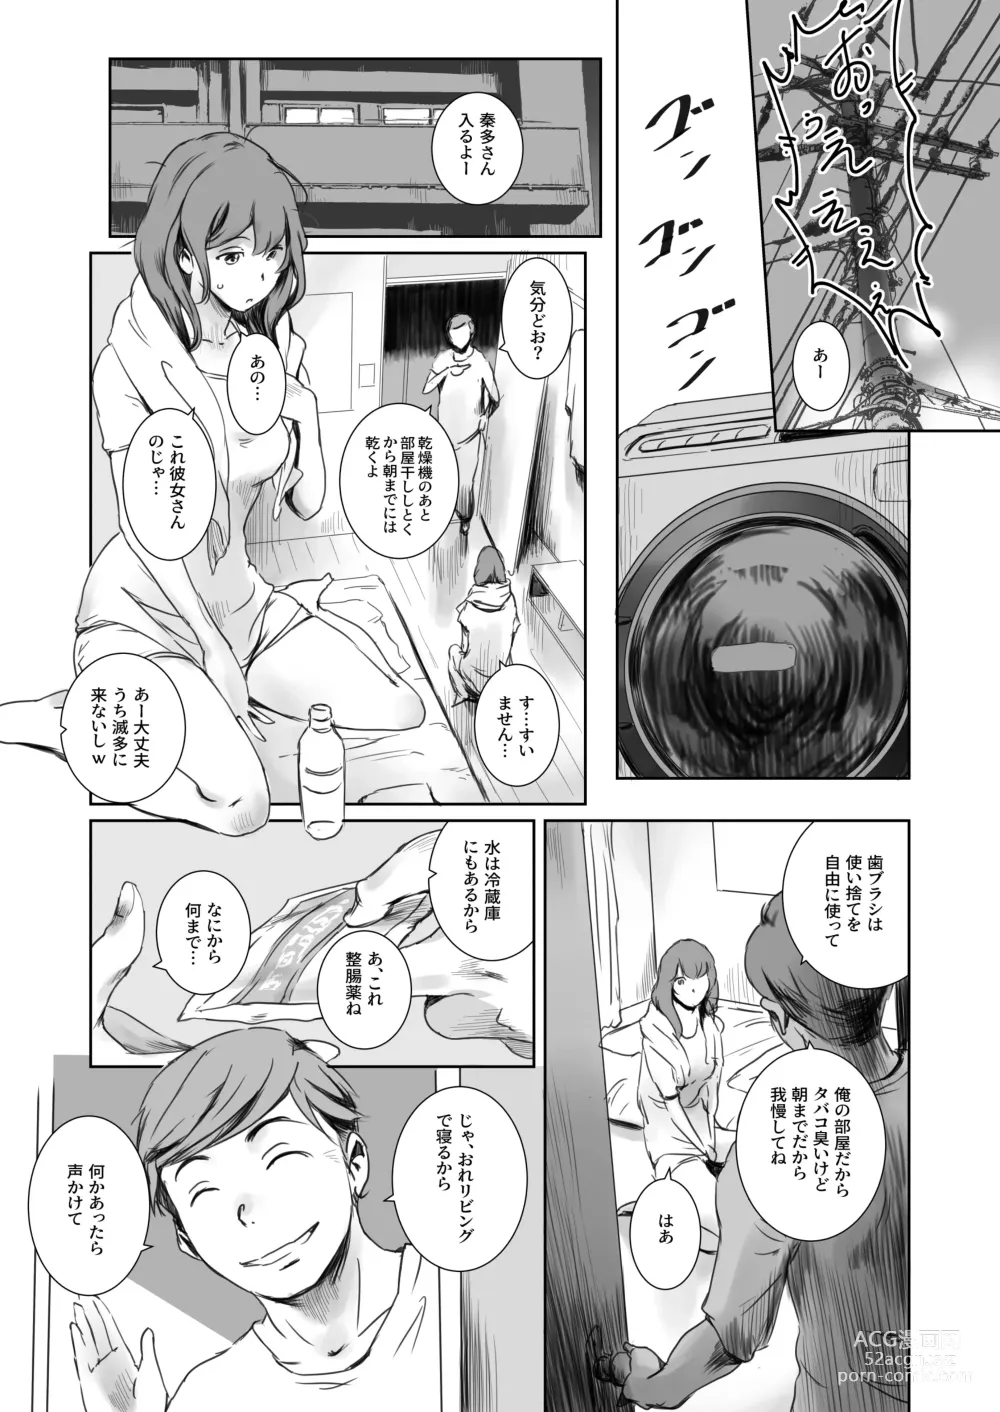 Page 6 of doujinshi Niketsu no Futari